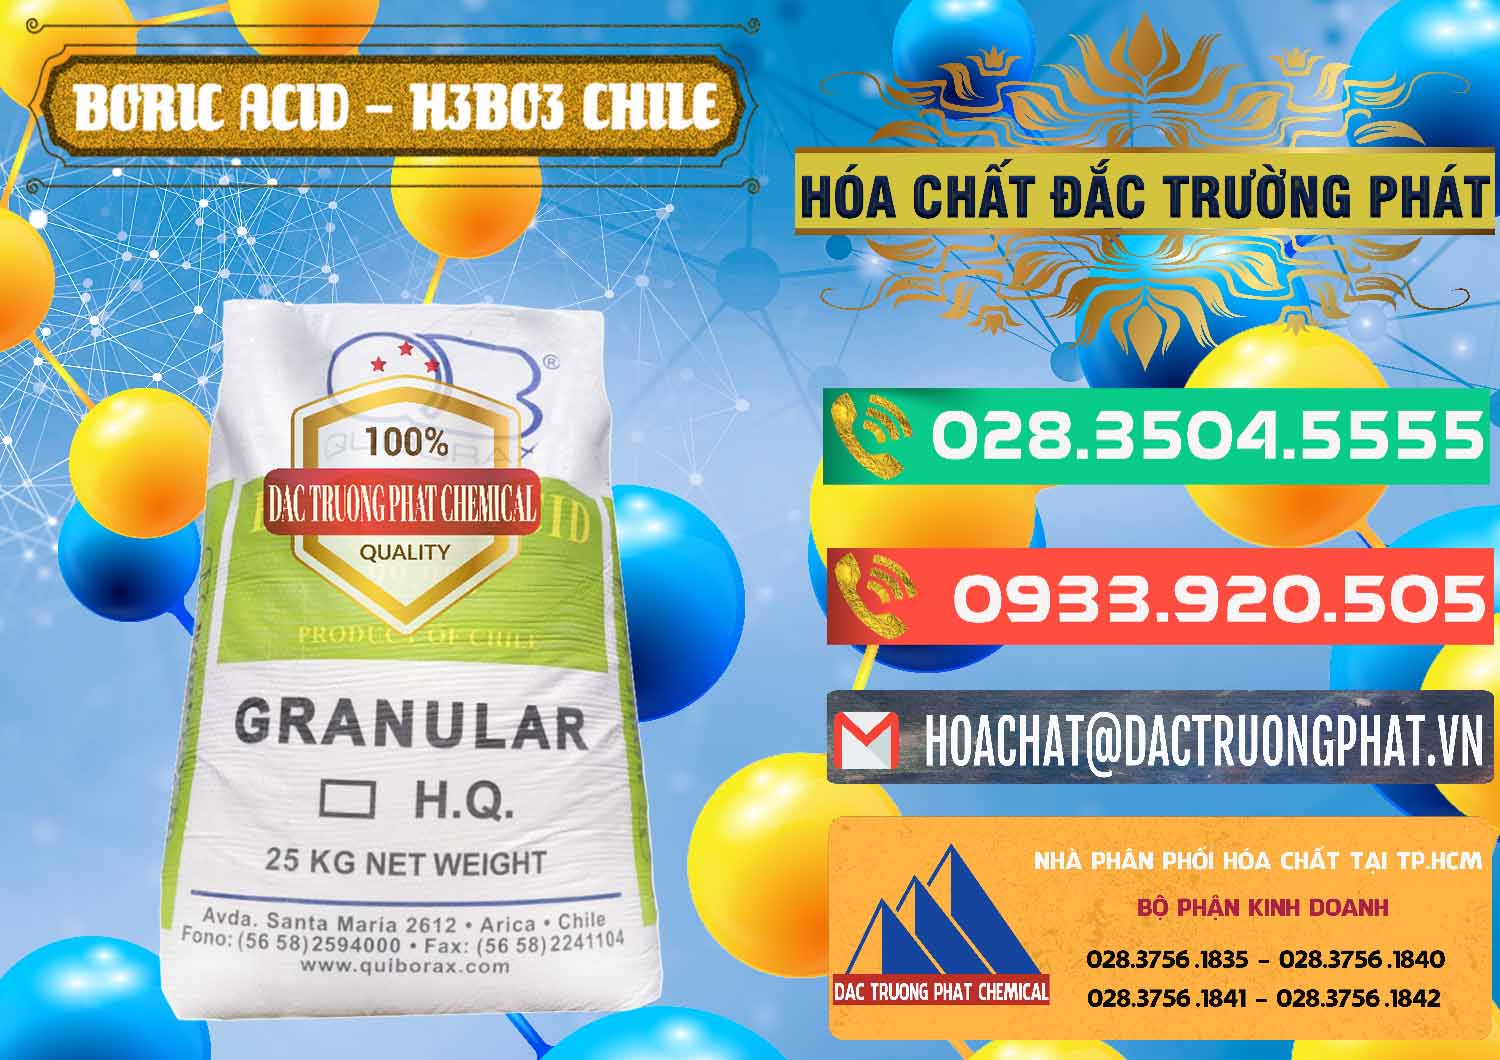 Công ty cung ứng - bán Acid Boric – Axit Boric H3BO3 99% Quiborax Chile - 0281 - Cty chuyên cung ứng ( phân phối ) hóa chất tại TP.HCM - congtyhoachat.com.vn